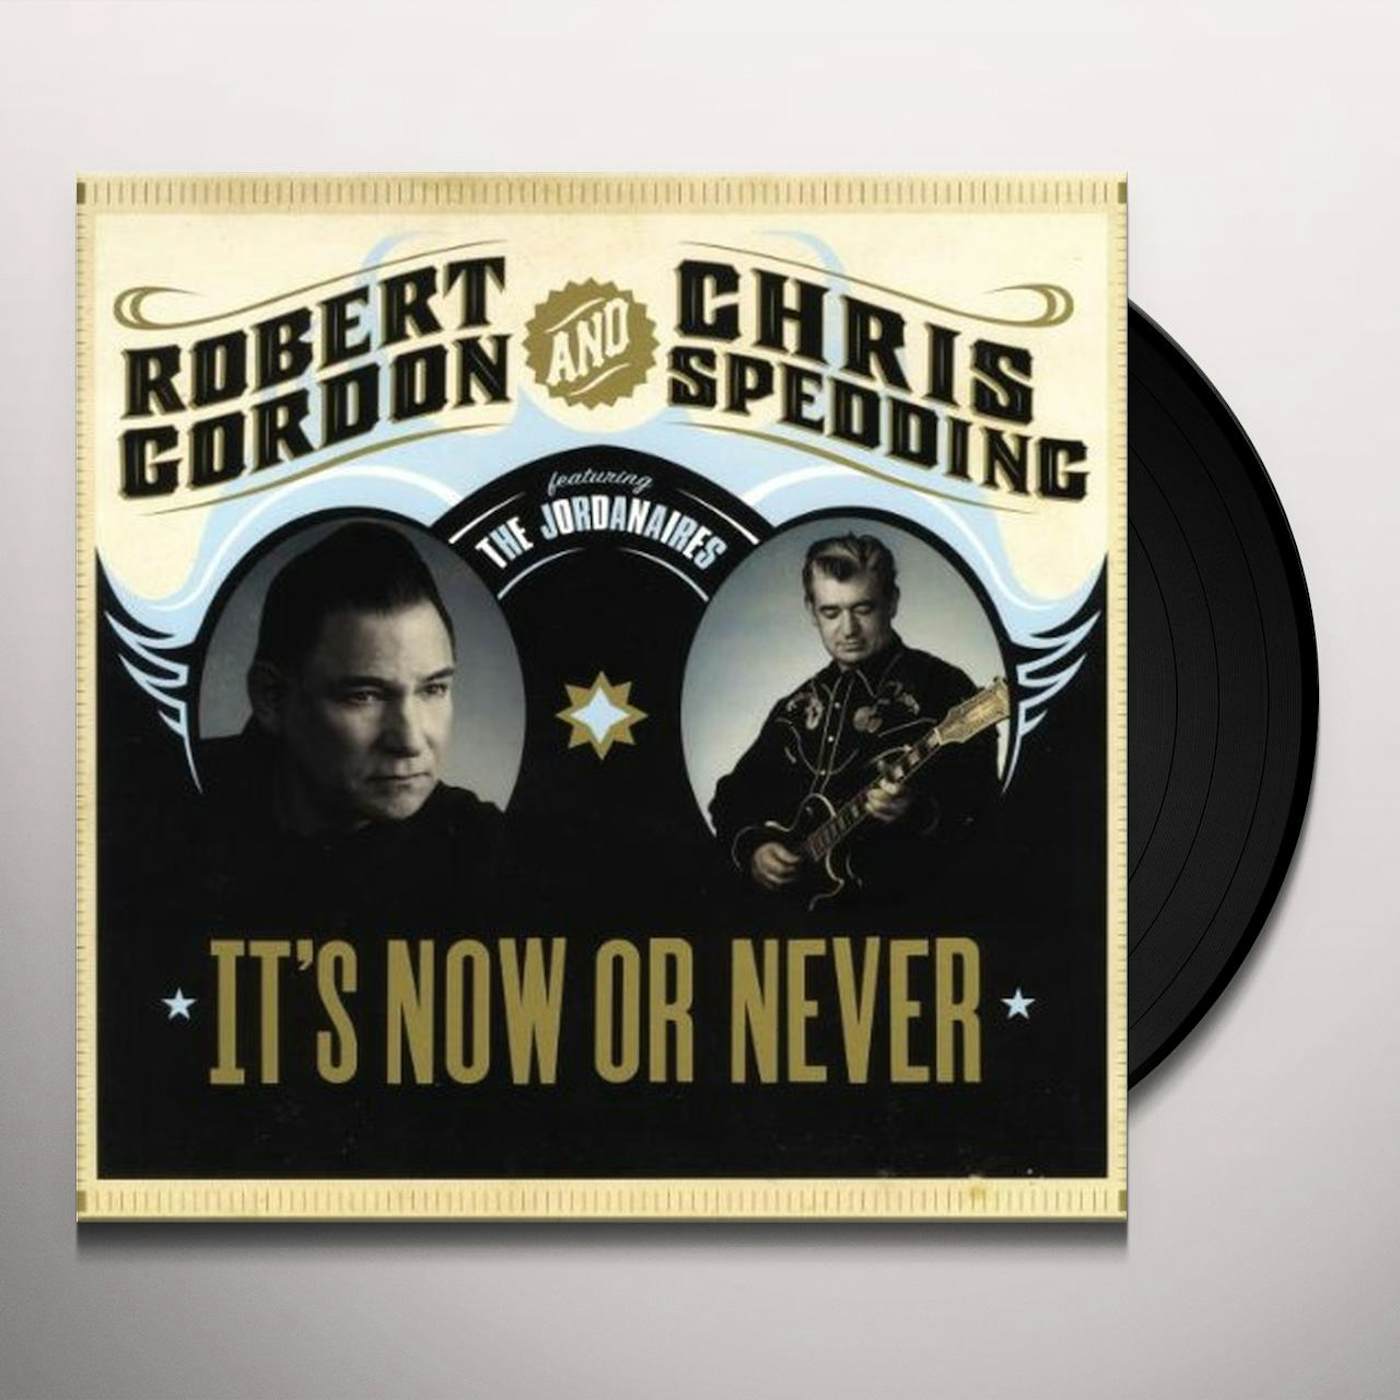 Robert Gordon & Chris Spedding IT'S NOW OR NEVER (Vinyl)